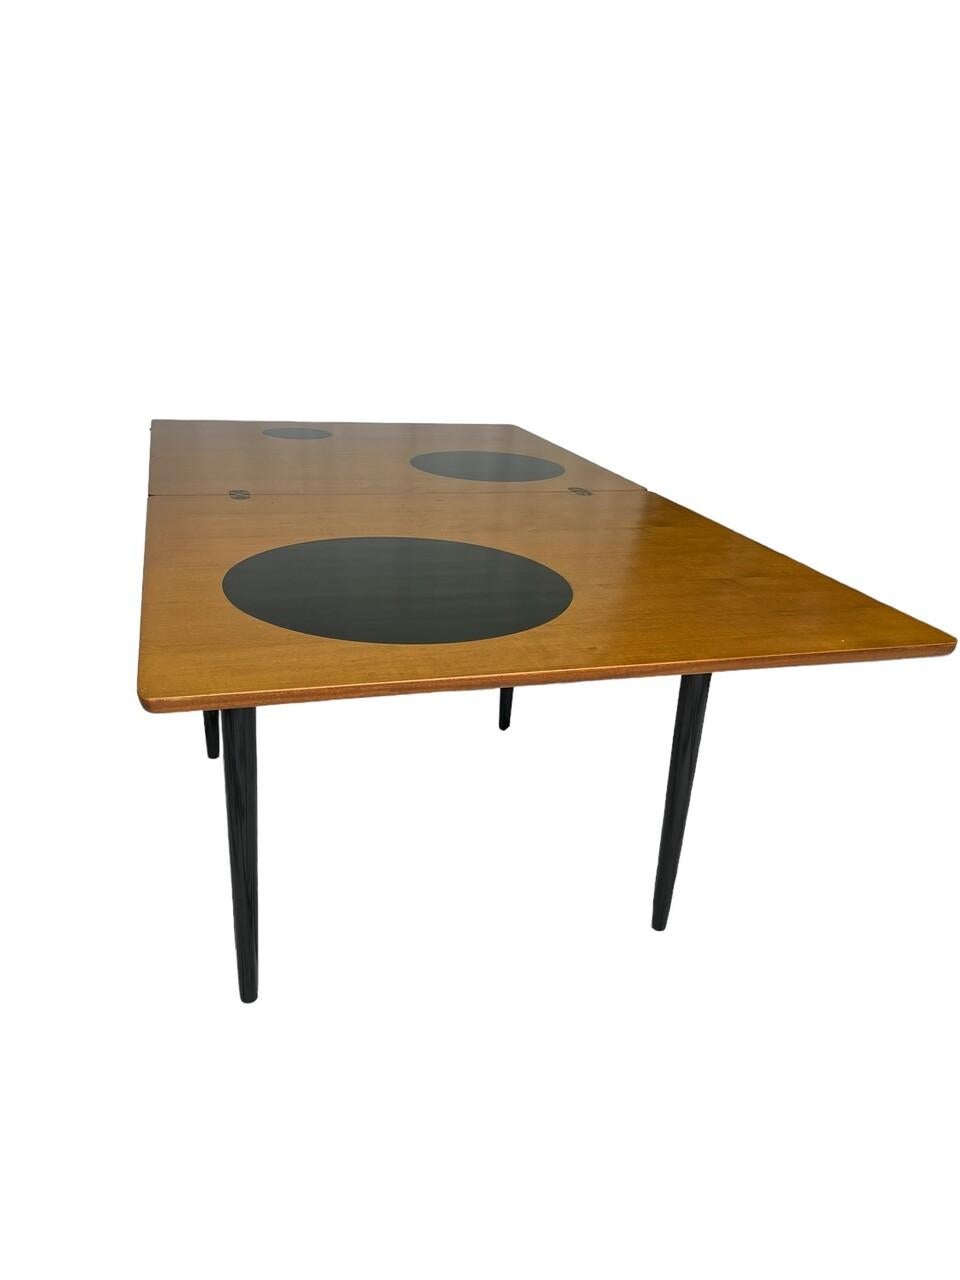 Gönnen Sie sich den Charme der Jahrhundertmitte mit dem von Grete Jalk inspirierten dänischen Teak-Flip-Top-Spieltisch. Das schlichte Design aus exquisitem Teakholz ist mit skurrilen Kreisen versehen, die Ihrem Raum einen Hauch von Verspieltheit